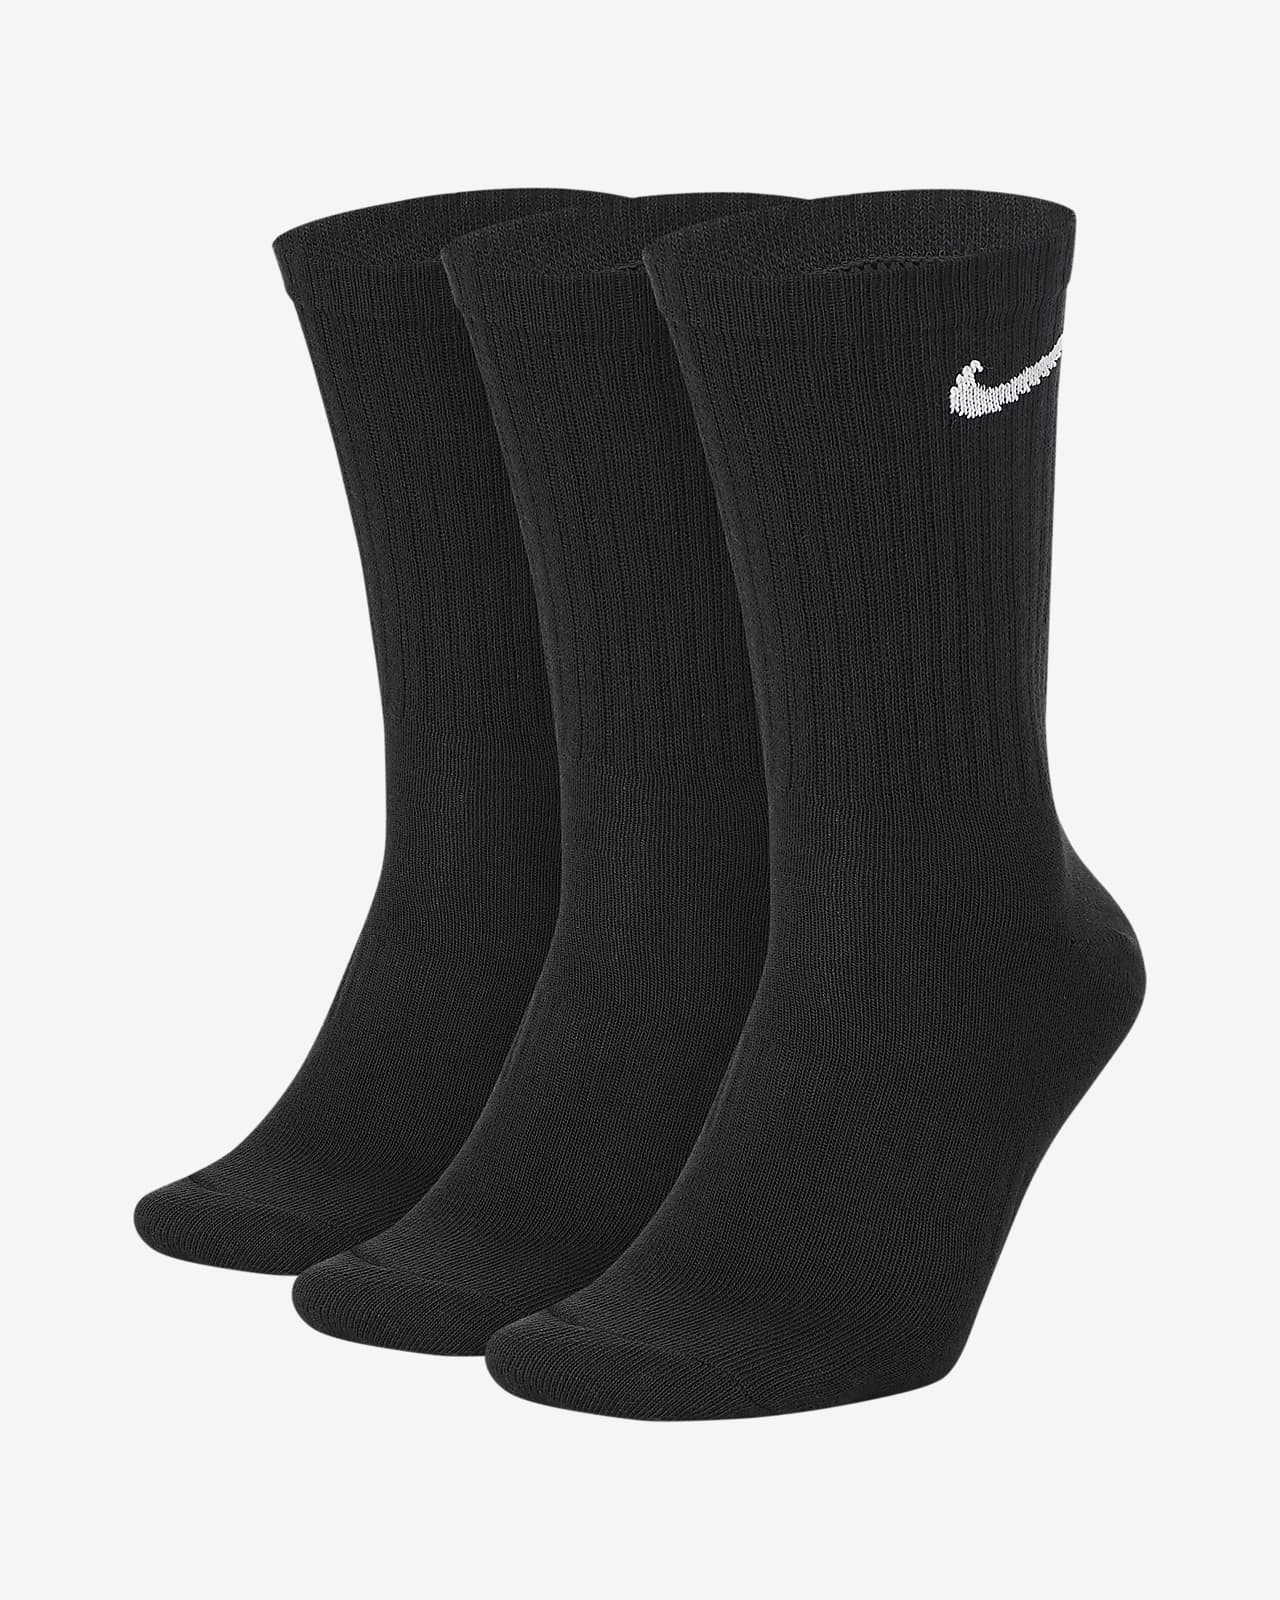 Středně vysoké tréninkové ponožky Nike Everyday Lightweight (3 páry)